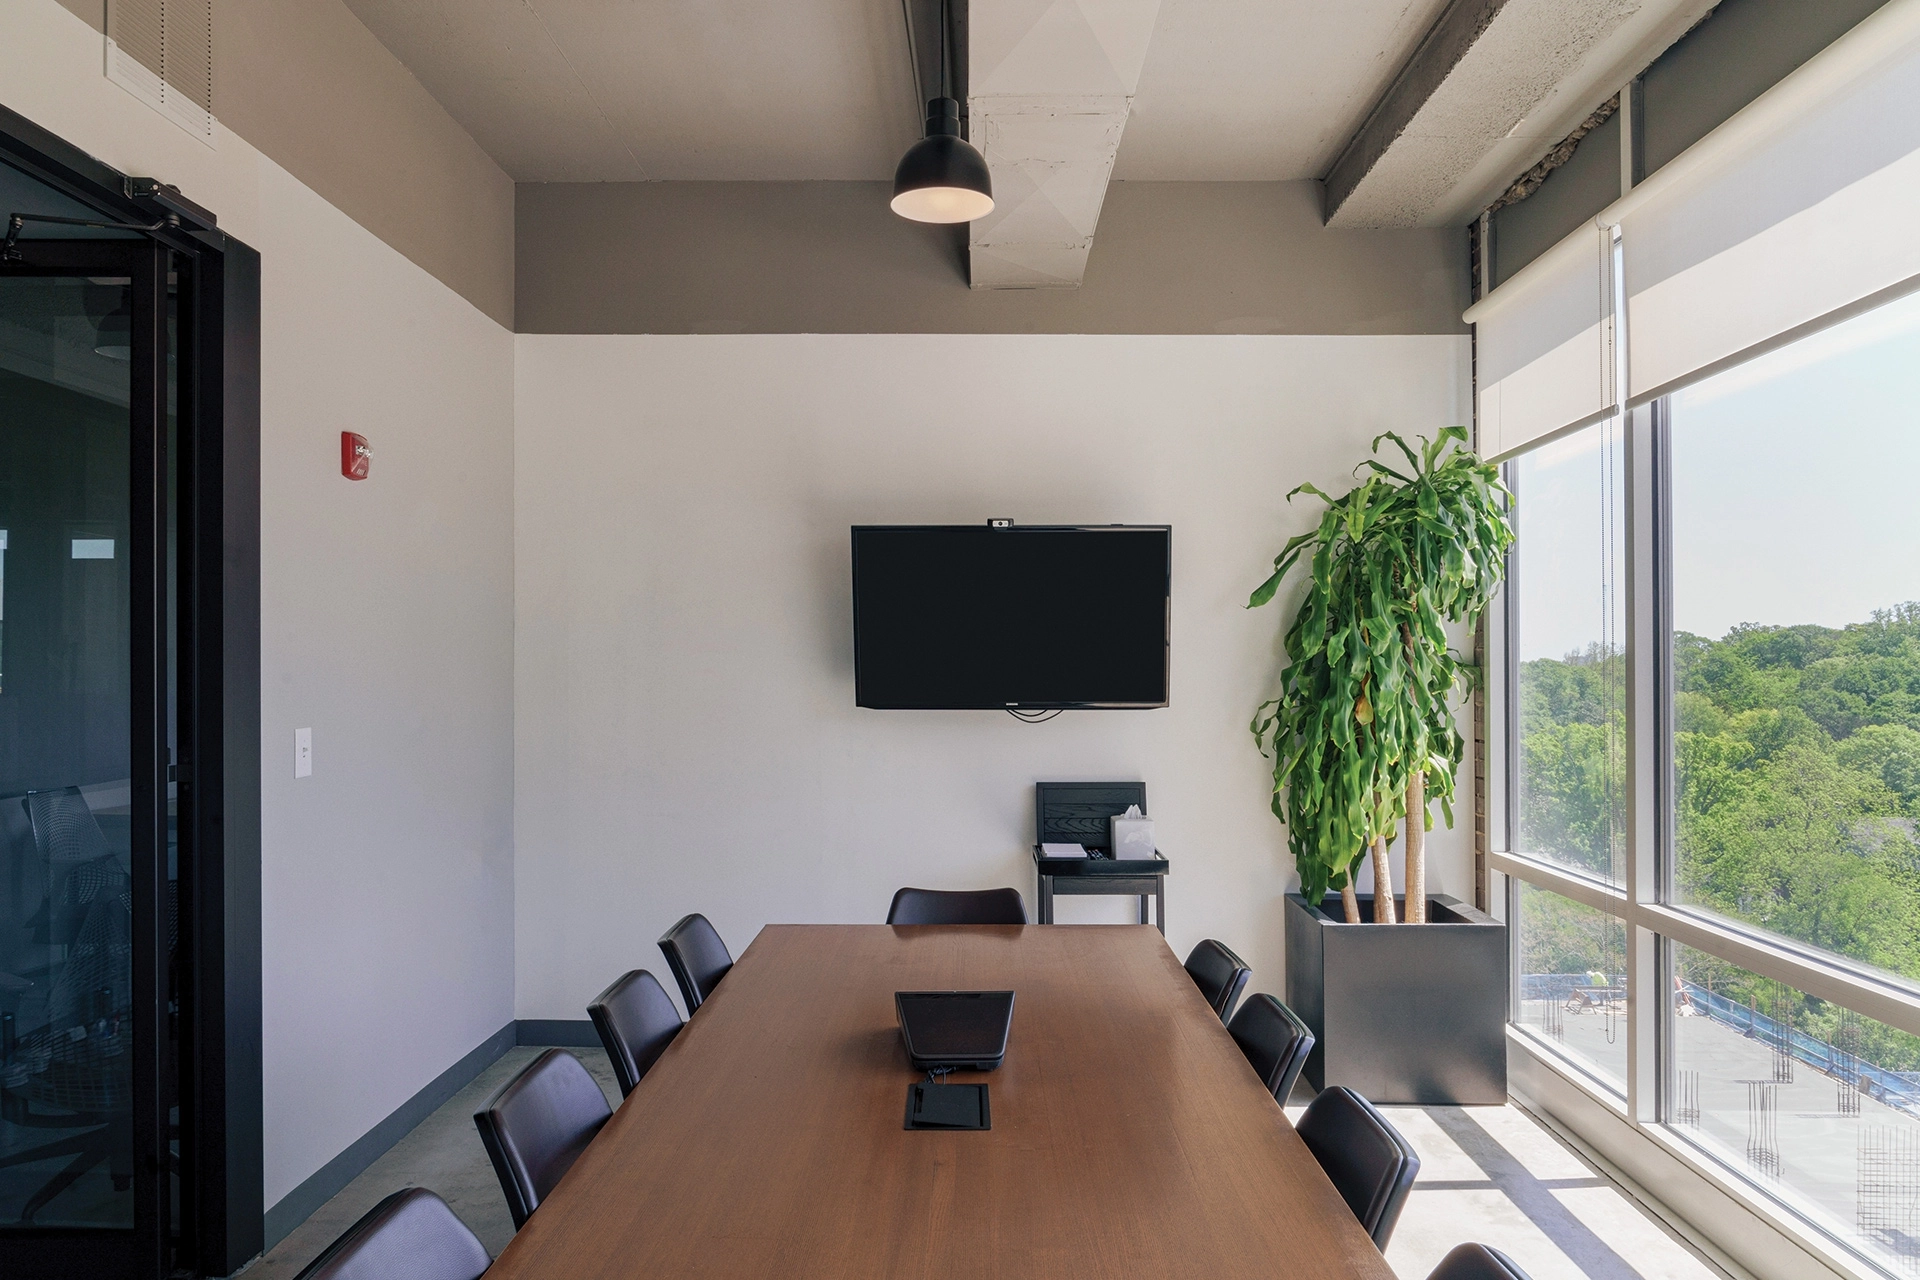 Une salle de réunion de coworking équipée d'une table, de chaises et d'une grande fenêtre.